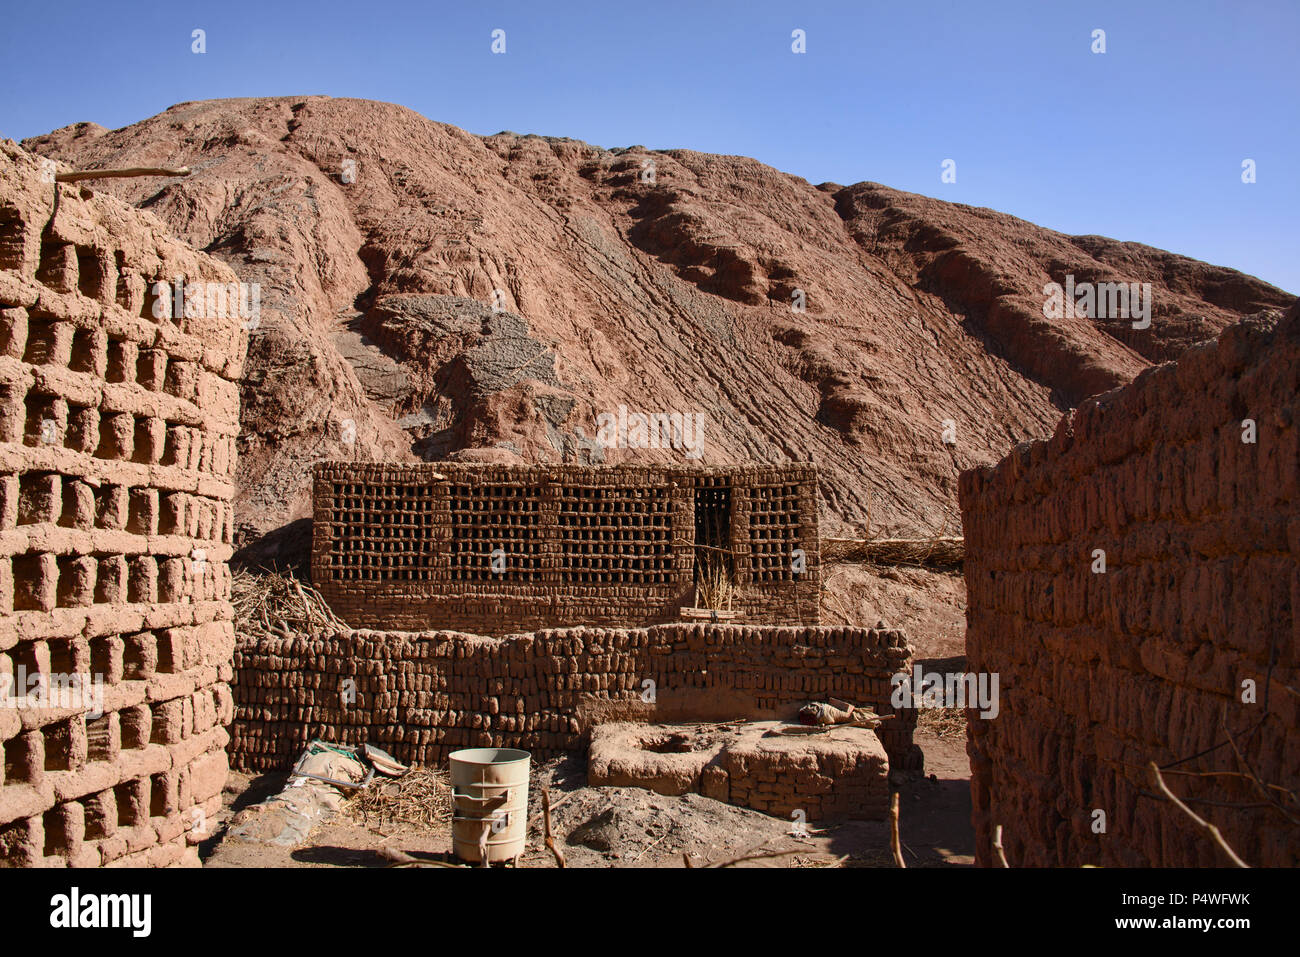 Ancient mud brick village in the Tuyoq Valley, Turpan, Xinjiang, China Stock Photo